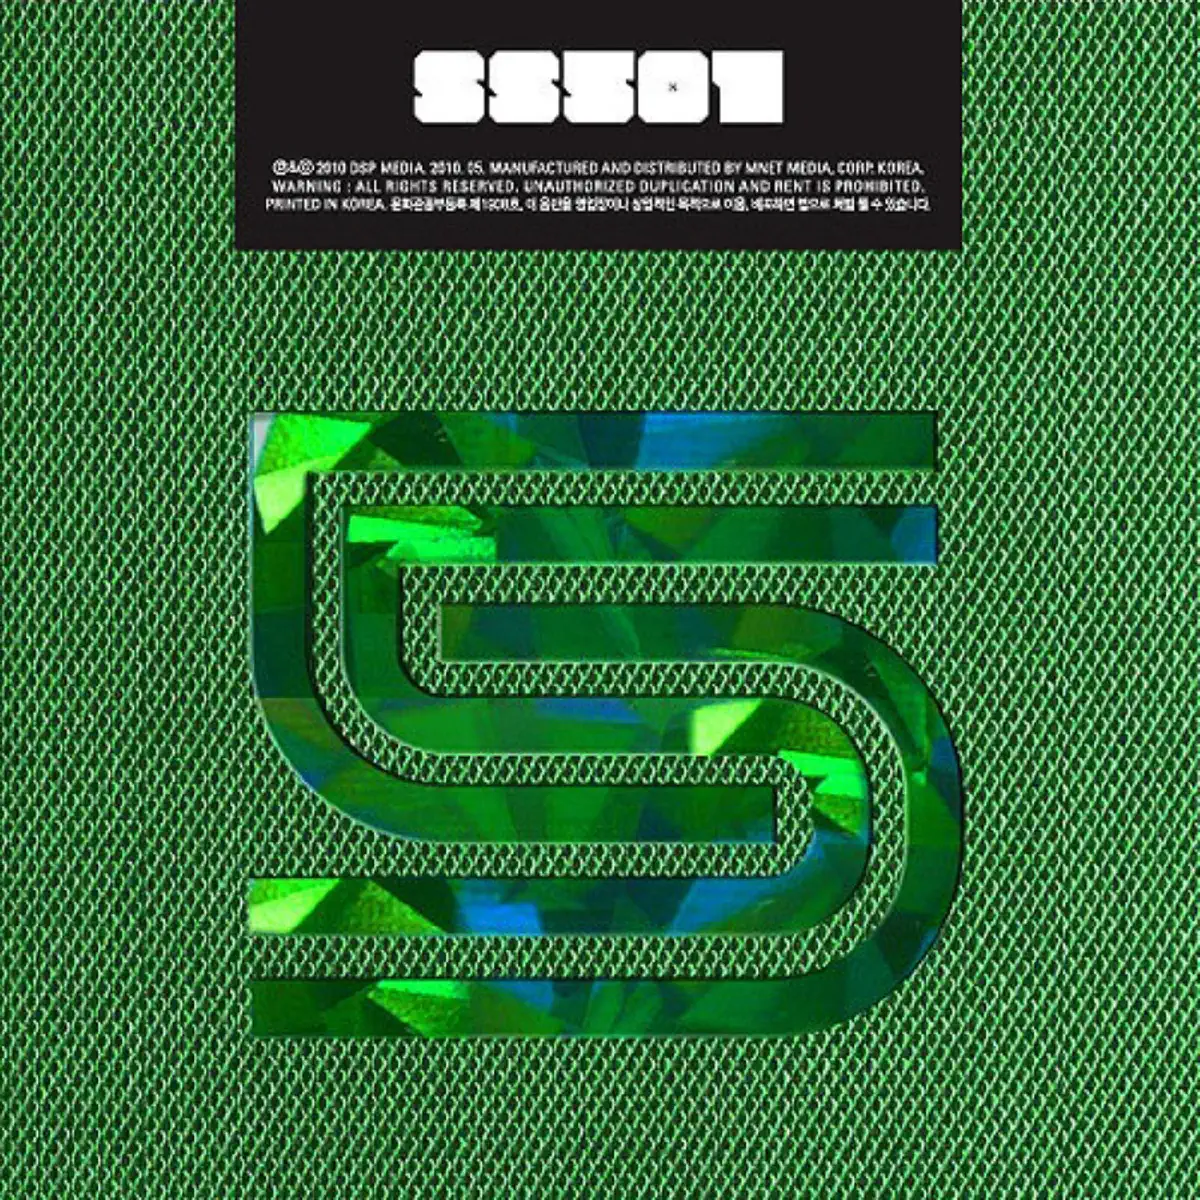 SS501 - Destination - EP (2010) [iTunes Plus AAC M4A]-新房子